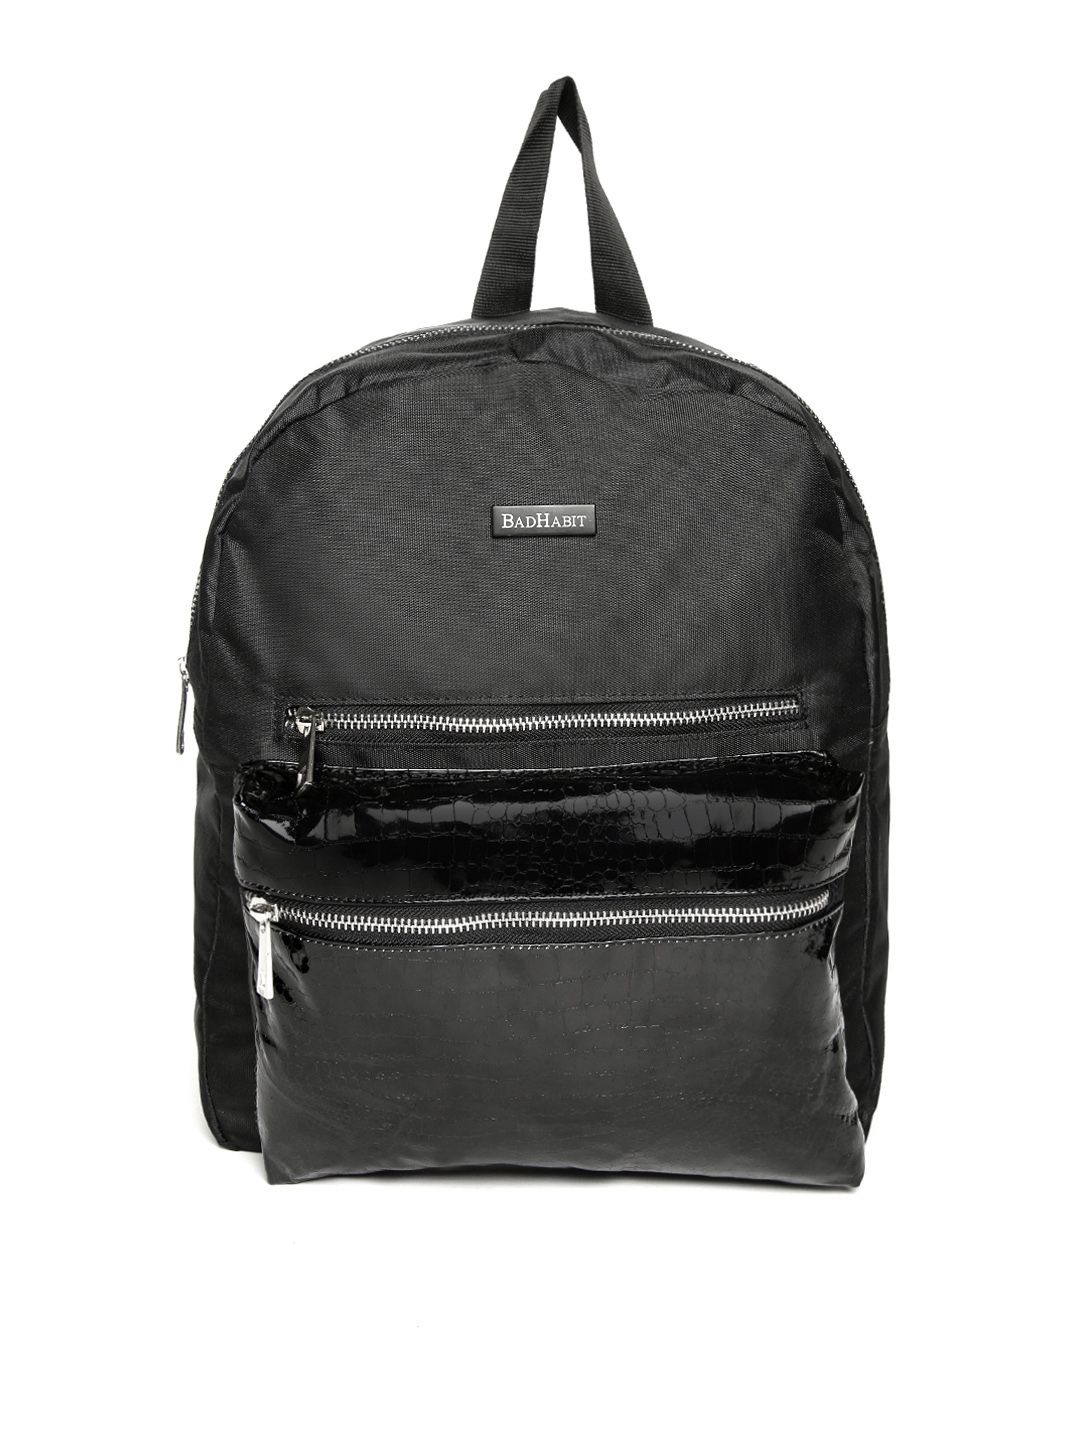 BAD HABIT Unisex Black Croc Textured Backpack Price in India